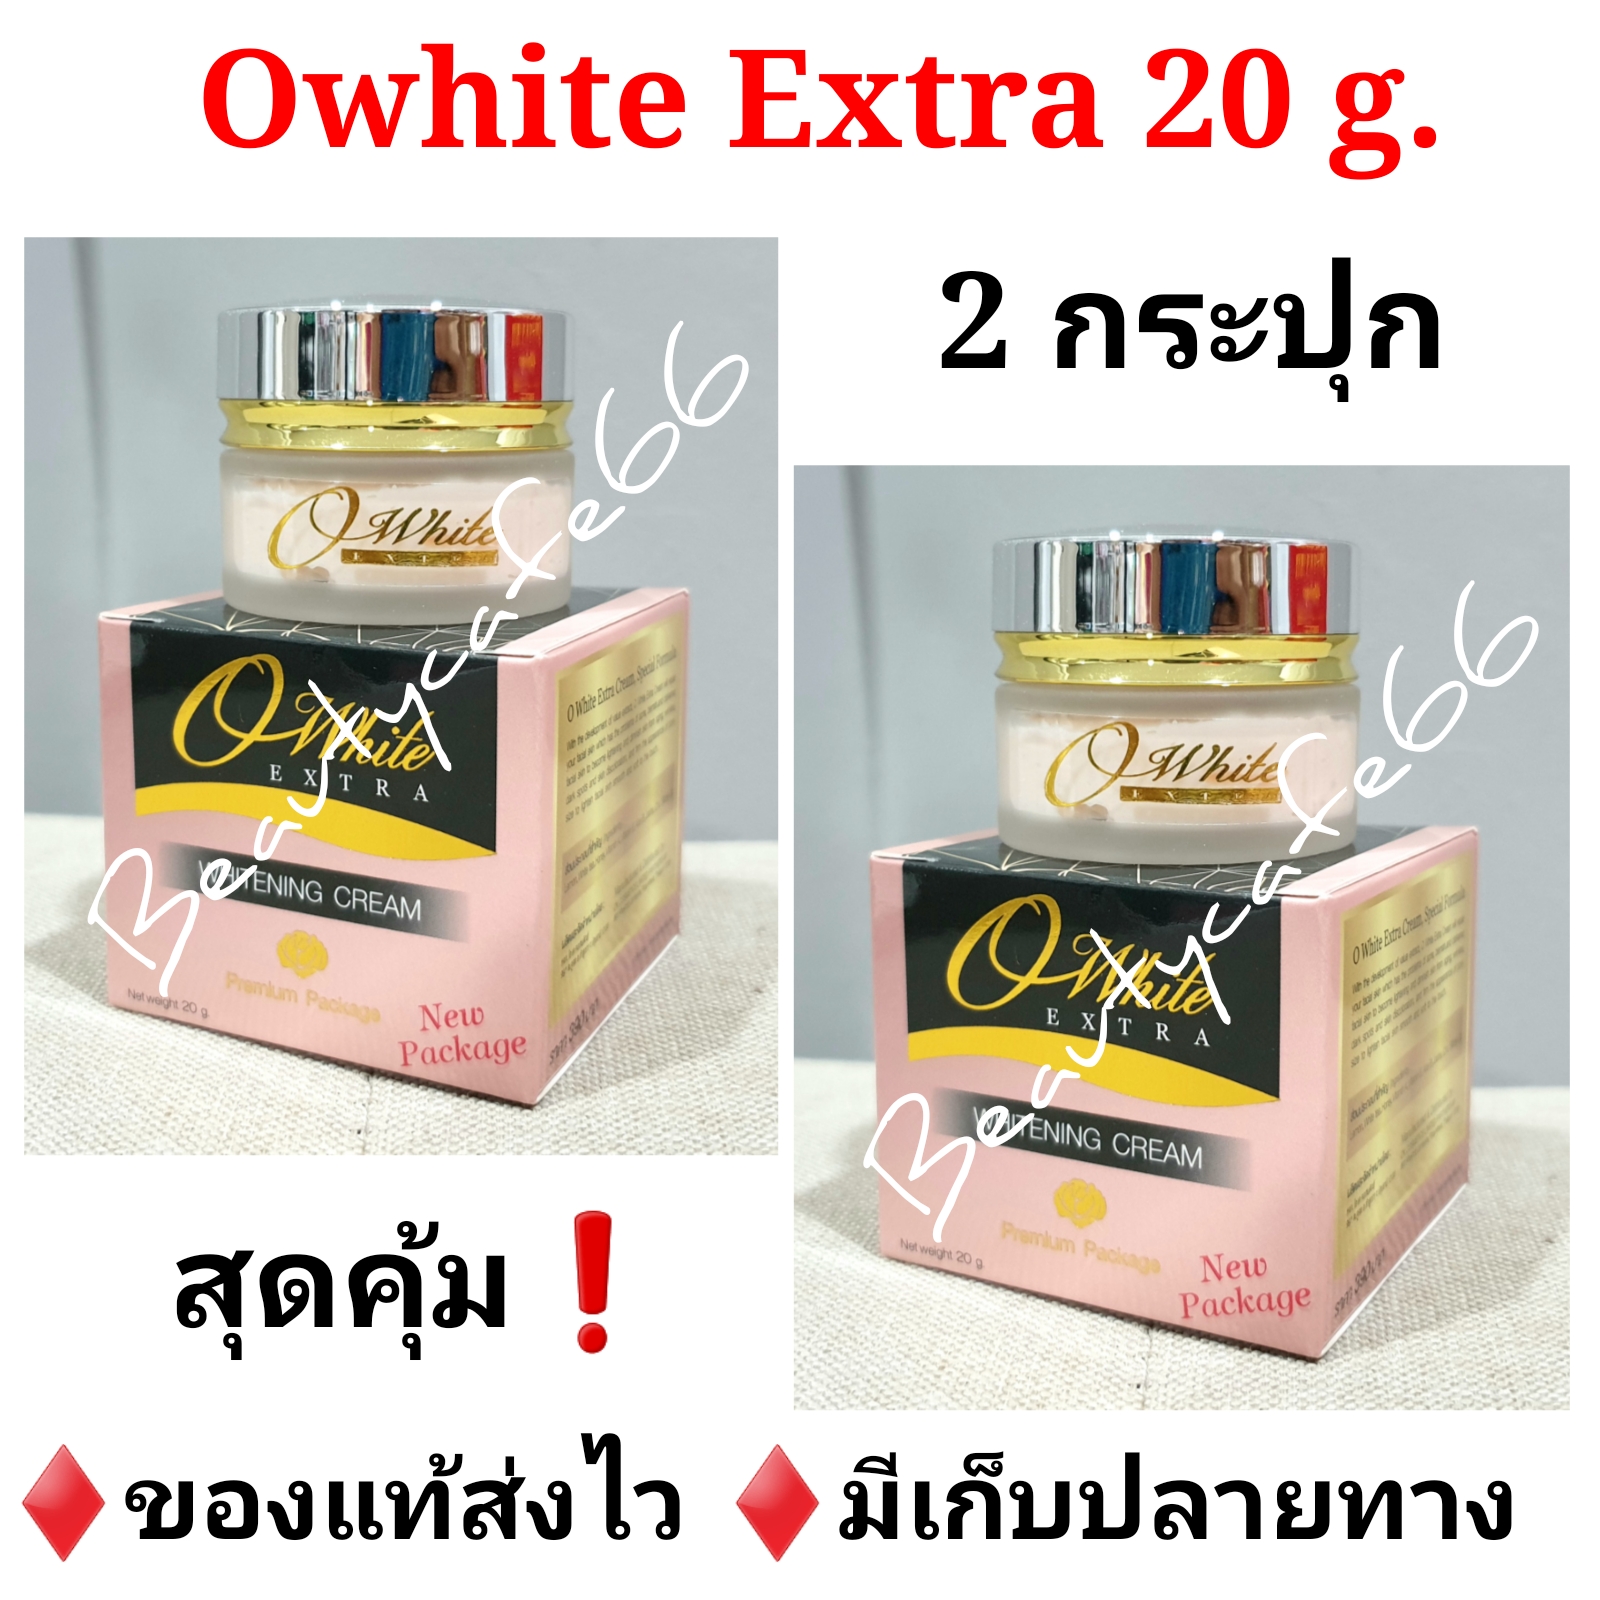 (2 กล่อง) ครีมโอไวท์ กล่องทอง Owhite Extra Whitening Cream 20 g. ของแท้ 100%